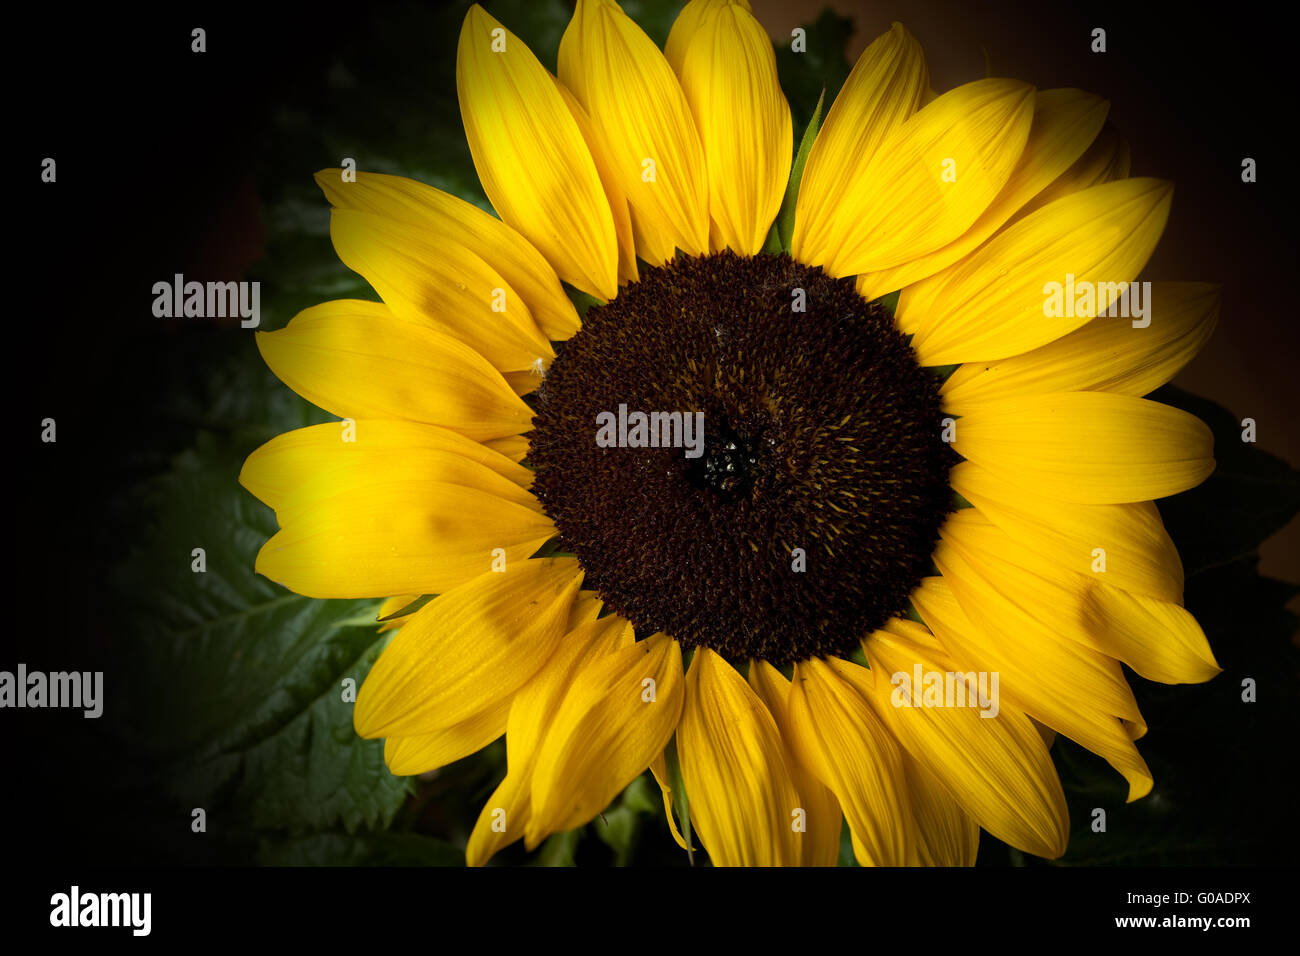 Sunflower isolated on black background studio shot Stock Photo